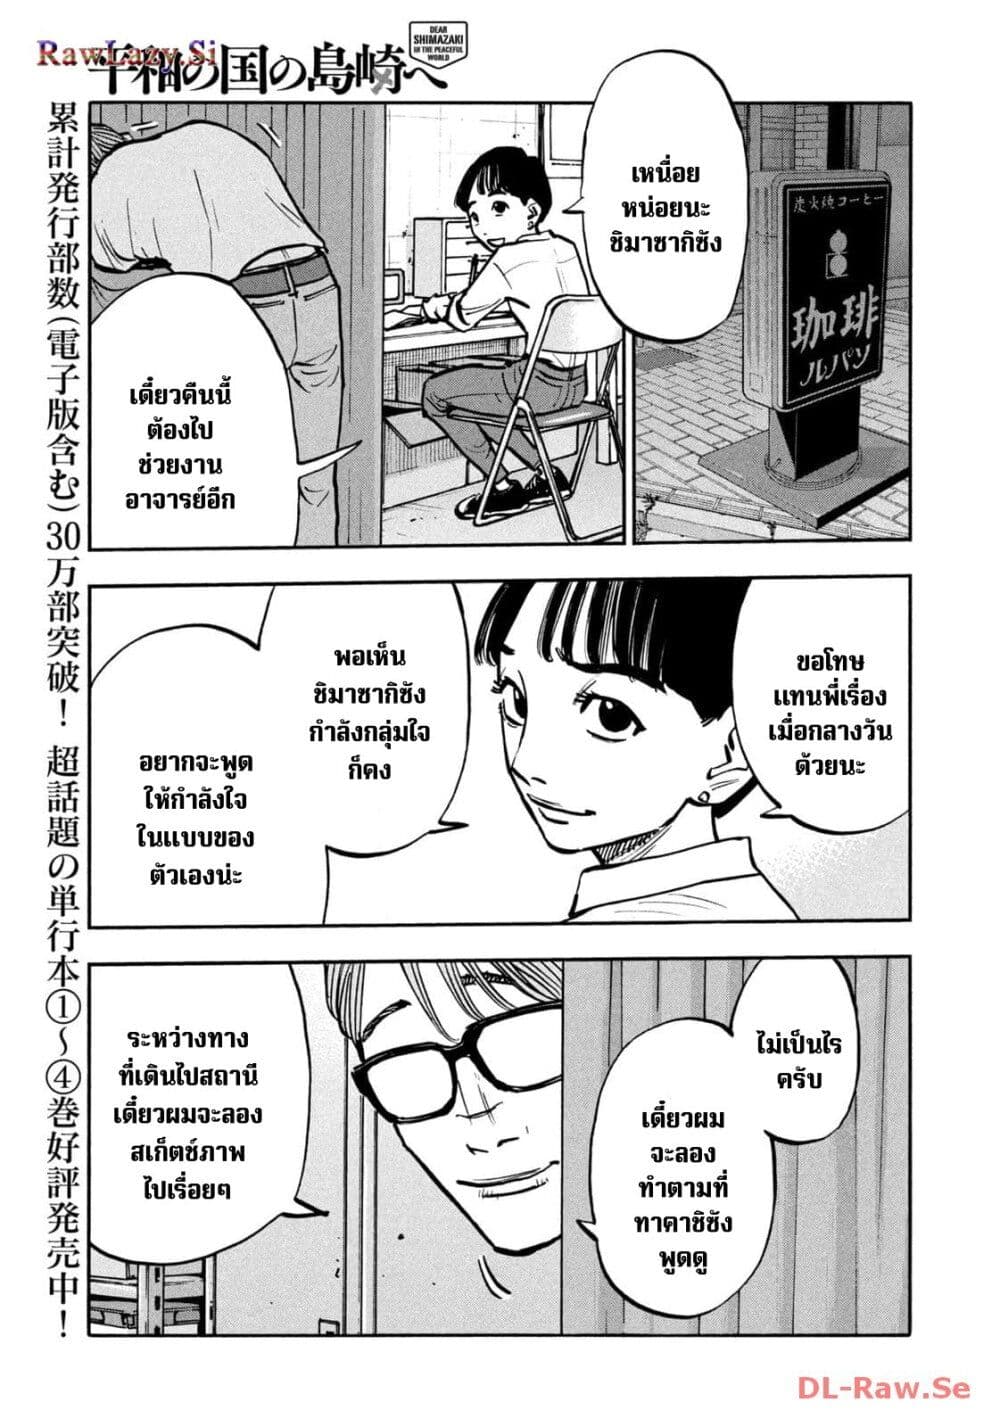 อ่านมังงะ Heiwa no Kuni no Shimazaki e ตอนที่ 54/4.jpg